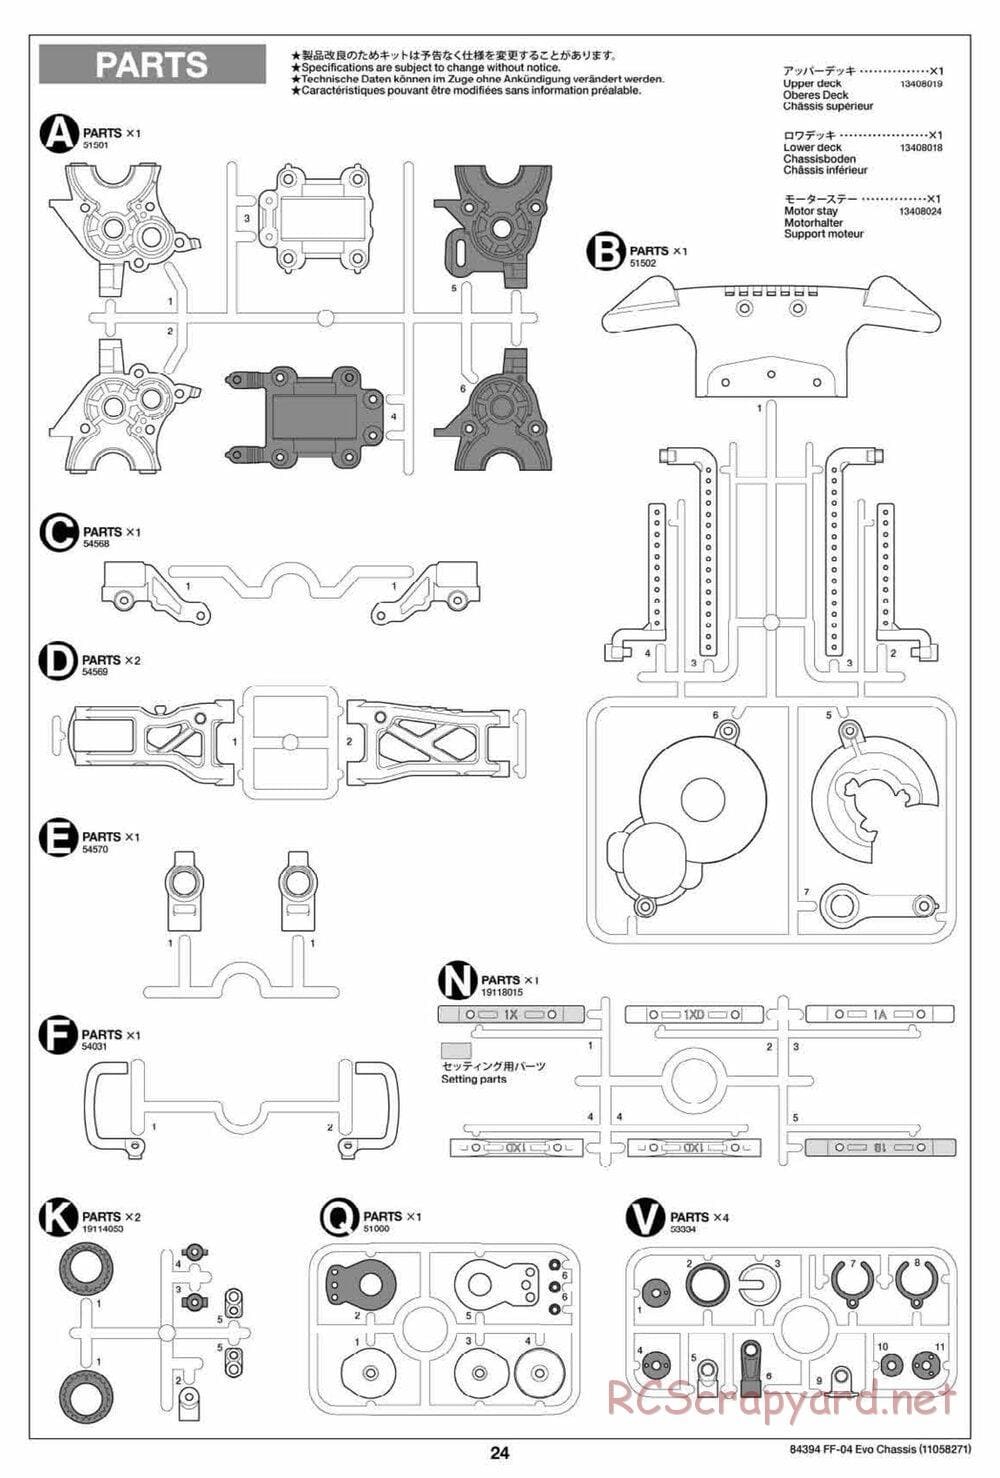 Tamiya - FF-04 Evo Chassis - Manual - Page 24